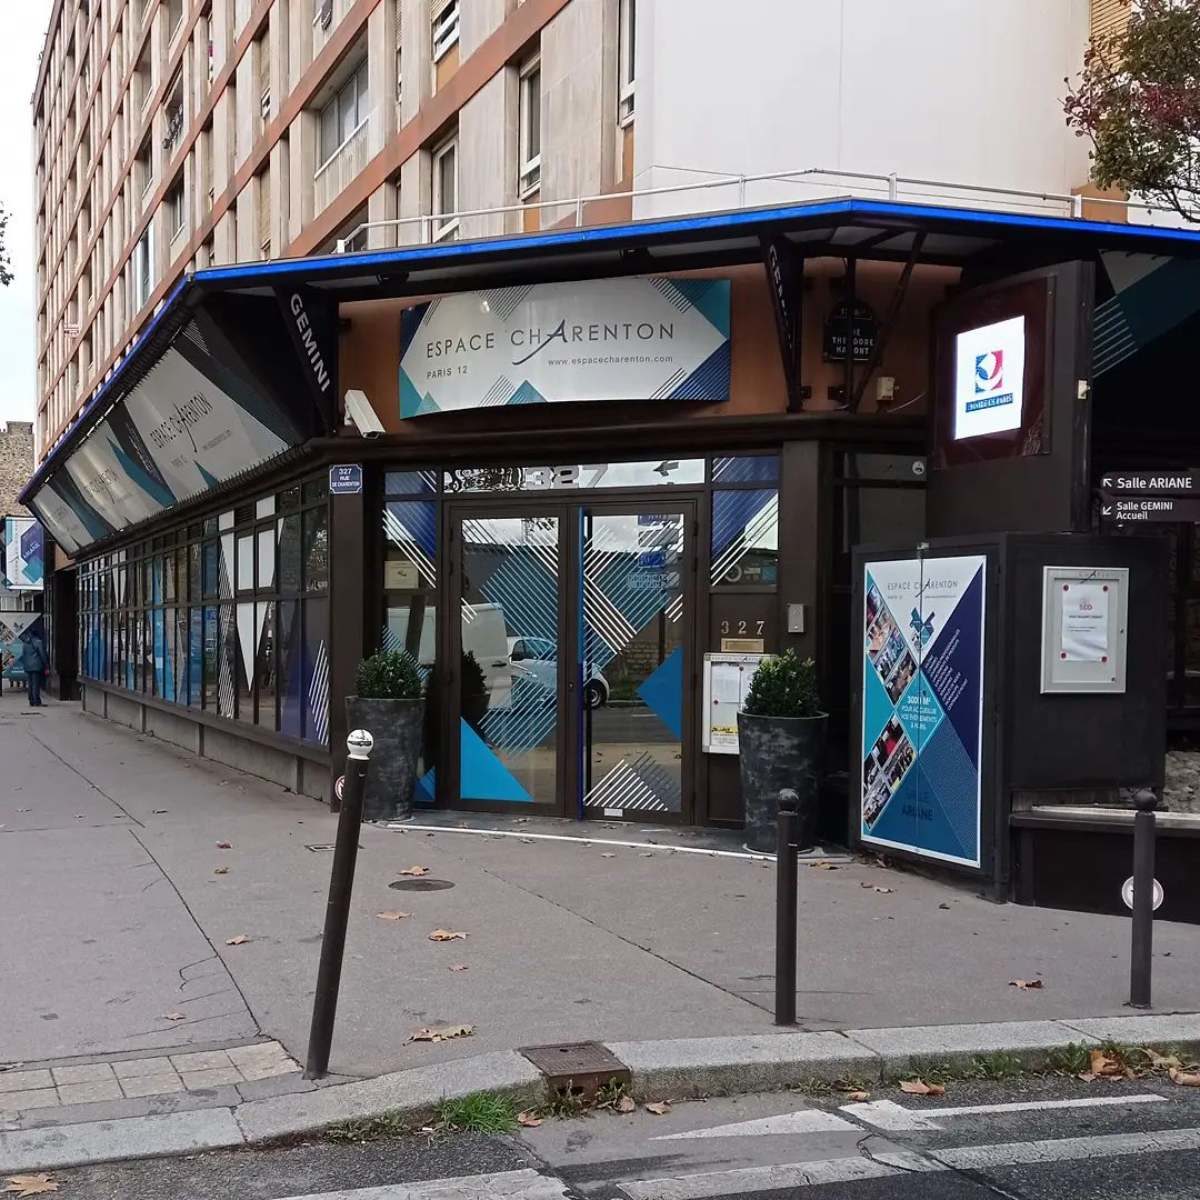 Vue de l'entrée de l'espace Charenton à Paris. C'est un bâtiment de plain pied vitré, aux teintes bleuâtres